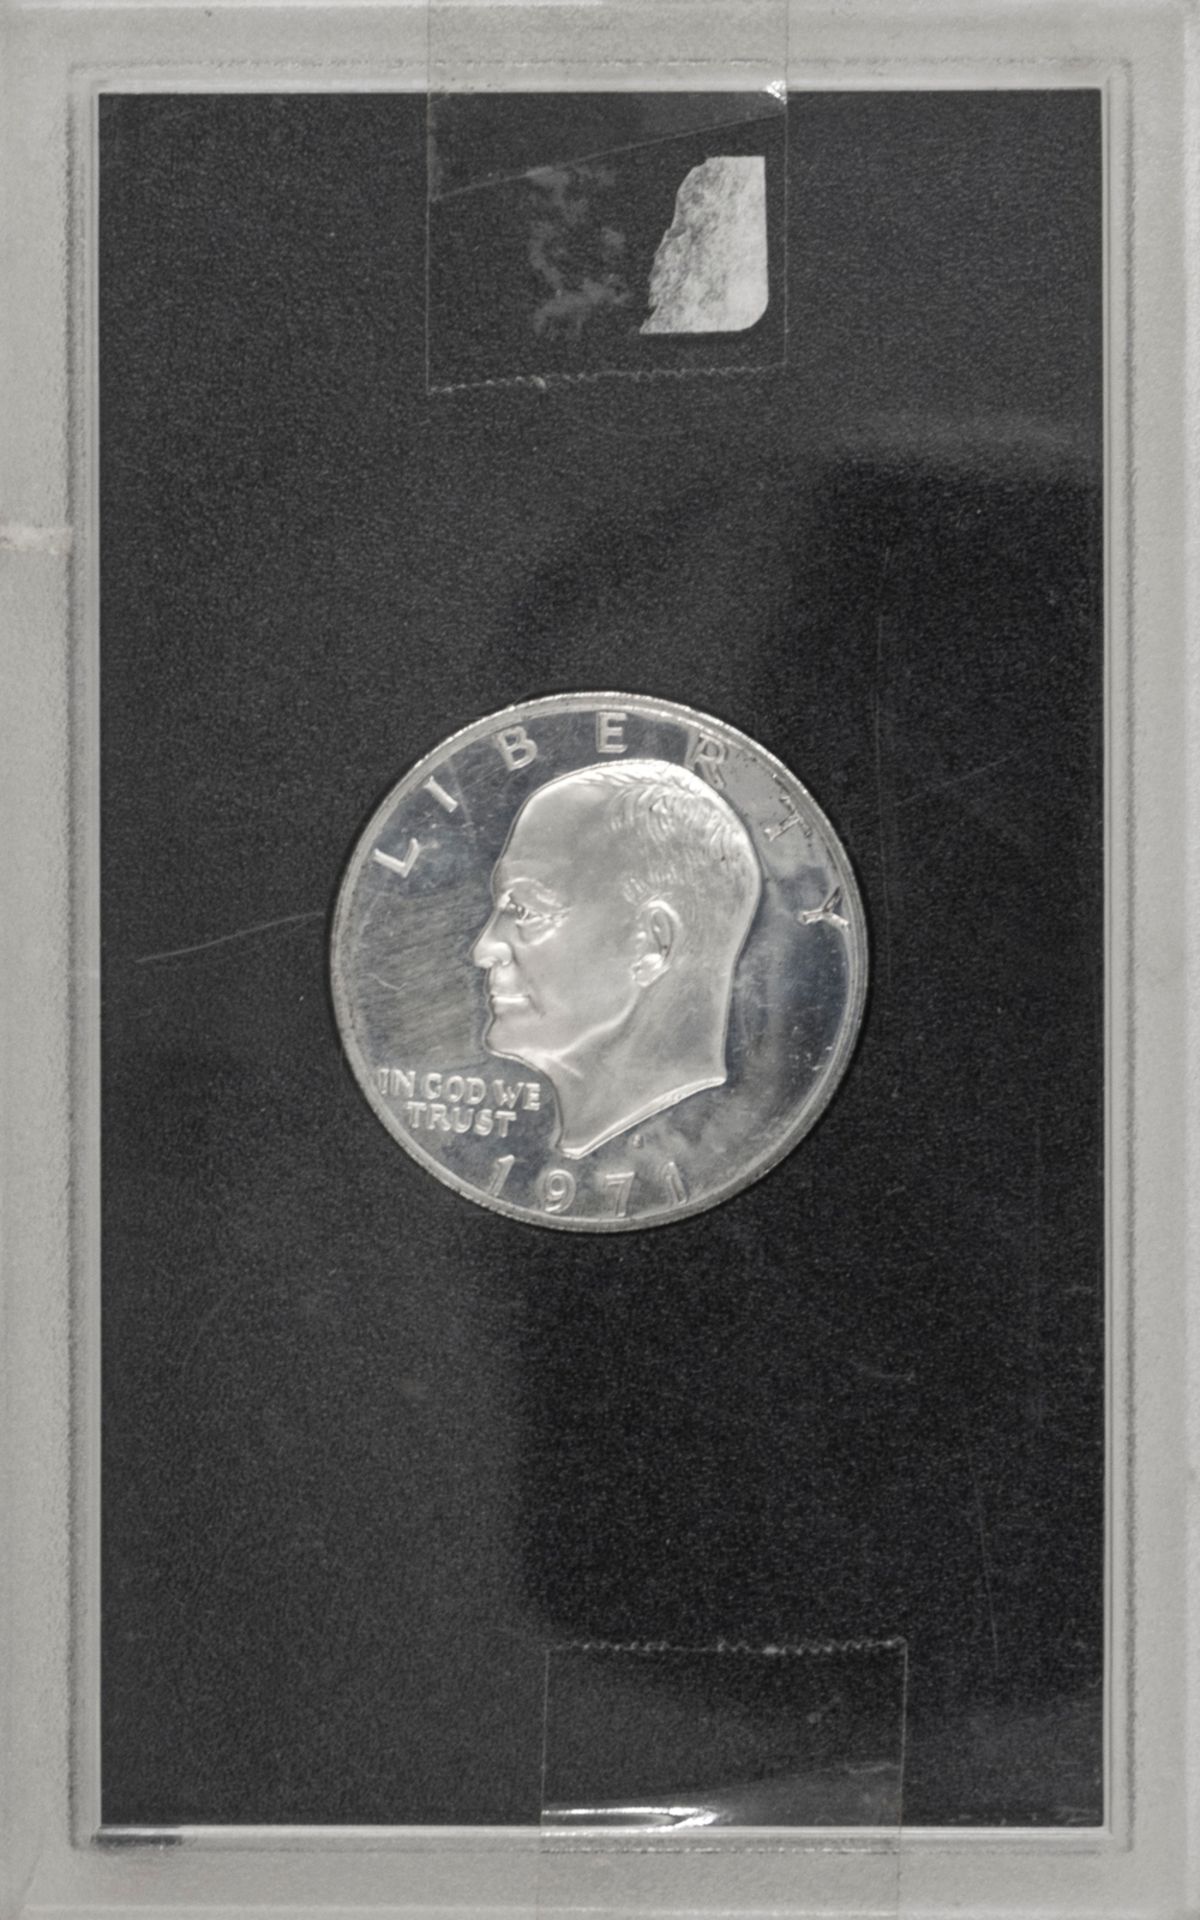 USA 1971,Eisenhower Proof Dollar. In original Box. PP. - Bild 2 aus 2